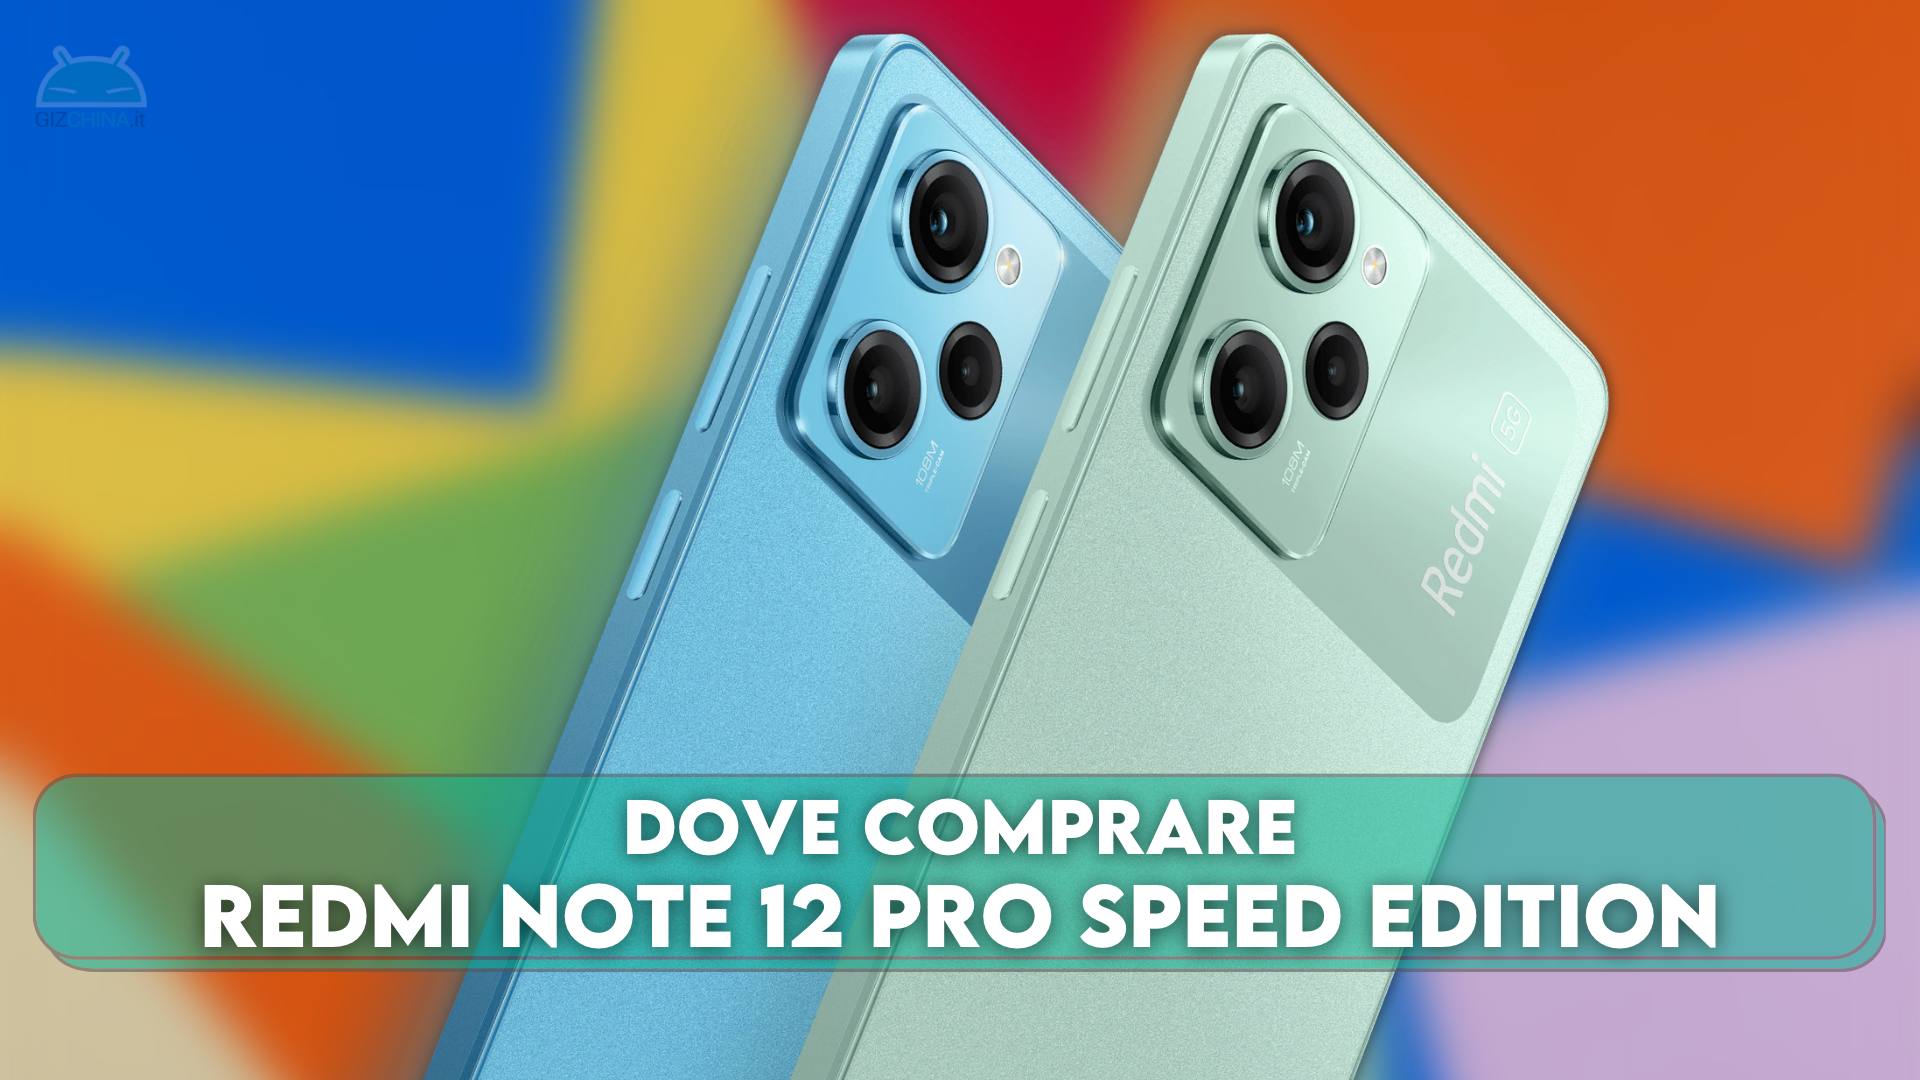 Redmi Note 12 Pro Speed Edition. Redmi Note 12 Pro Speed Edition (Redwood);. Note 12 pro speed edition